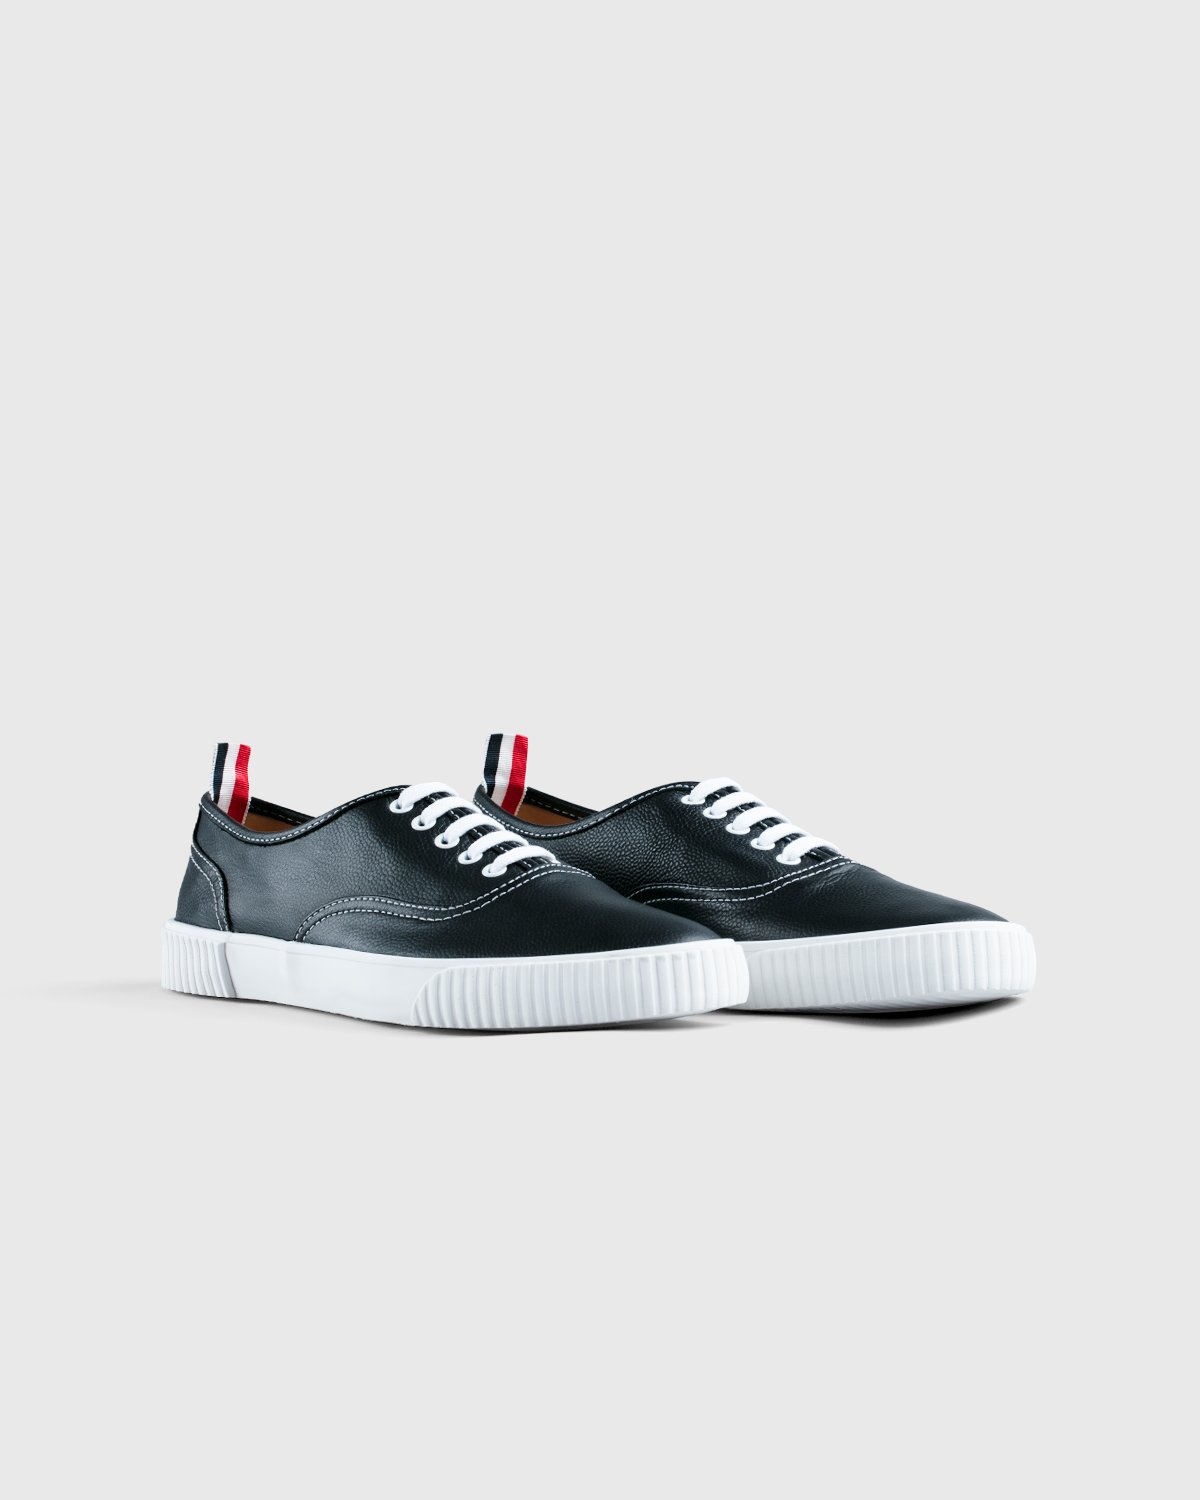 Thom Browne x Highsnobiety - Men's Heritage Sneaker Grey - Footwear - Grey - Image 2